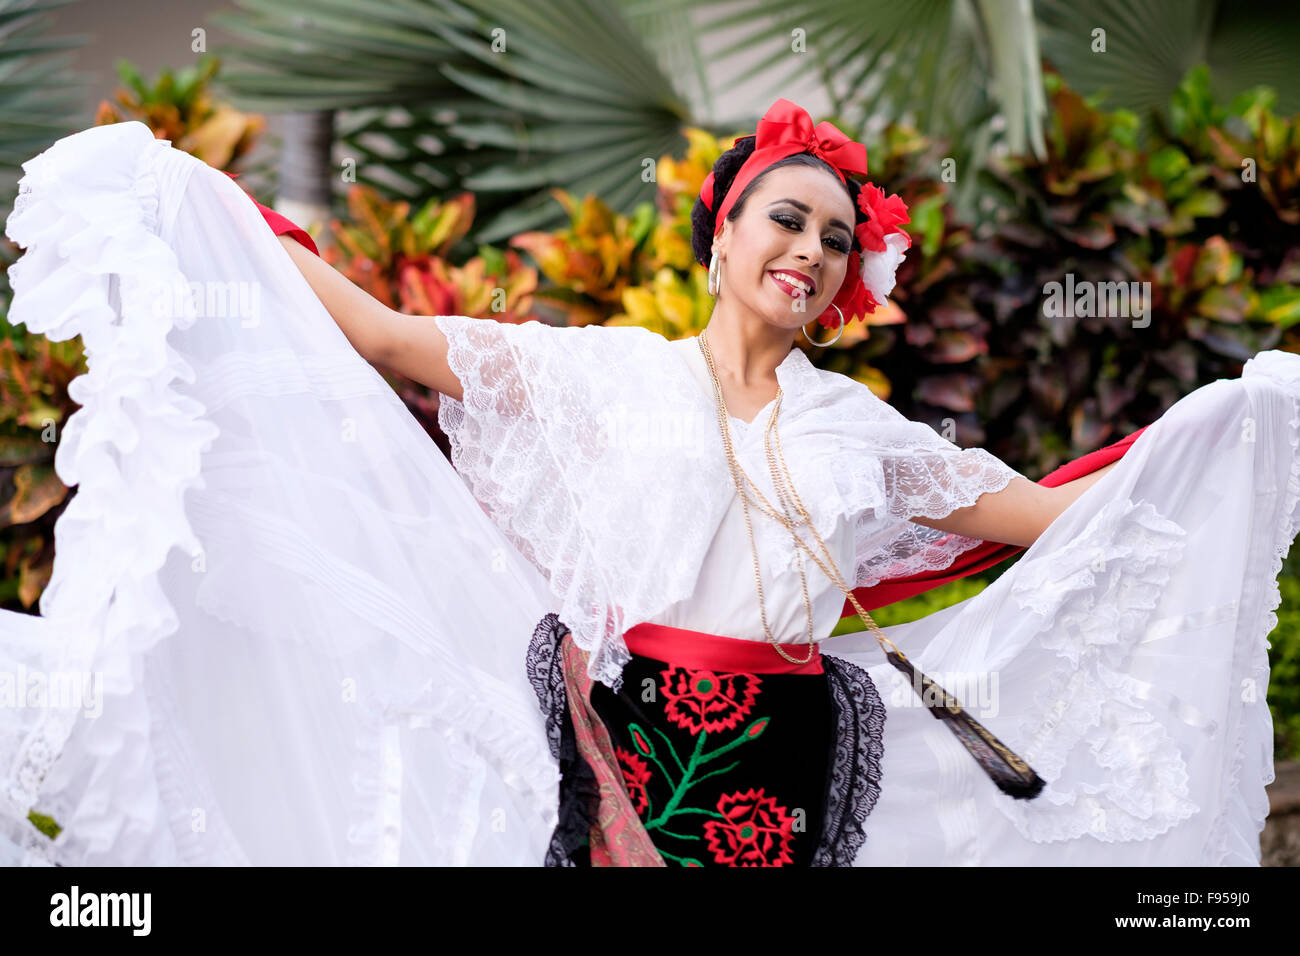 Femme dansant - Puerto Vallarta, Jalisco, Mexique. Les danseurs folkloriques de Xiutla - un groupe de danse mexicaine en costumes traditionnels re Banque D'Images